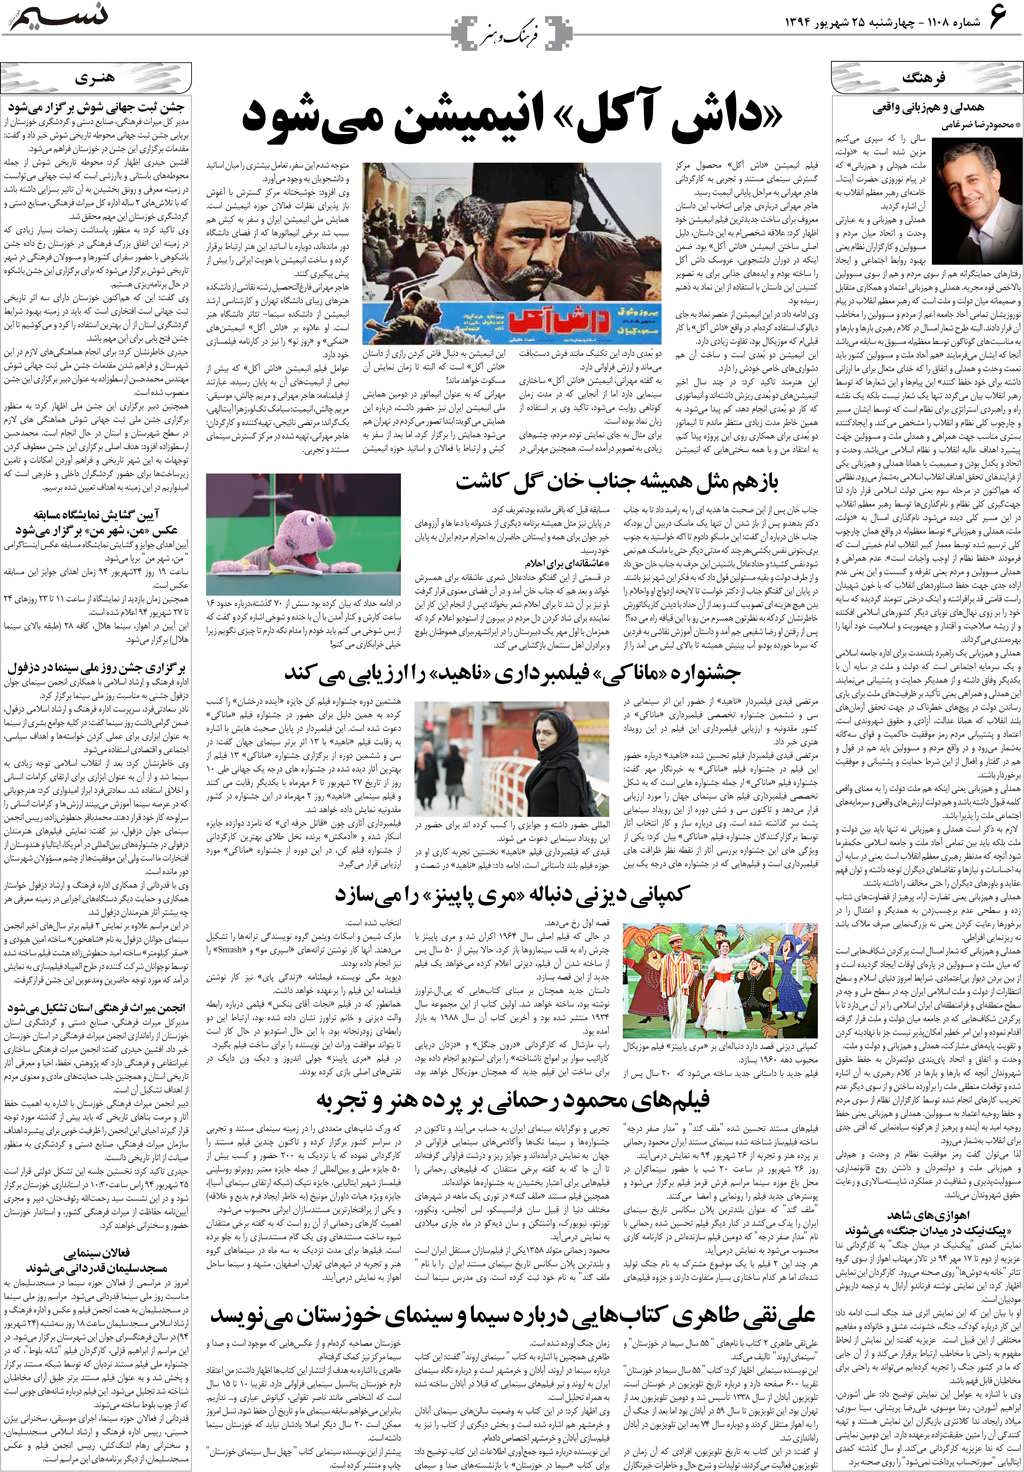 صفحه فرهنگ و هنر روزنامه نسیم شماره 1108